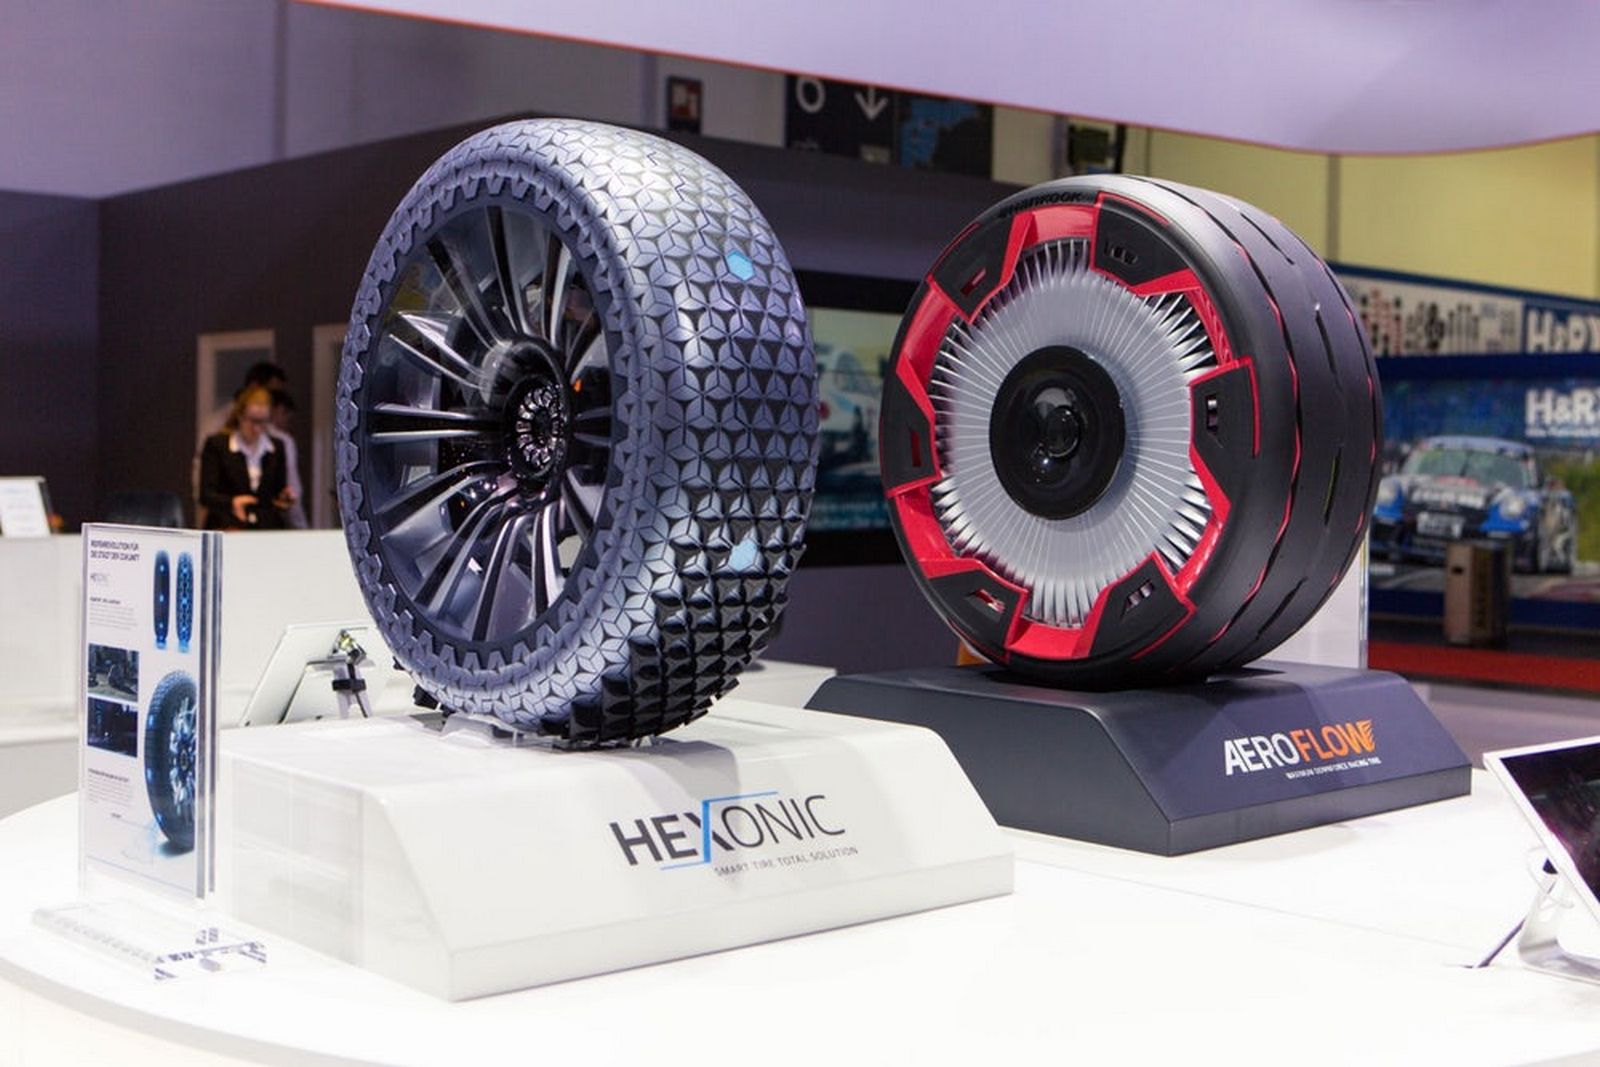 Les concepts de pneus futuristes Aeroflow et Hexonic du manufacturier Hankook. © Hankook